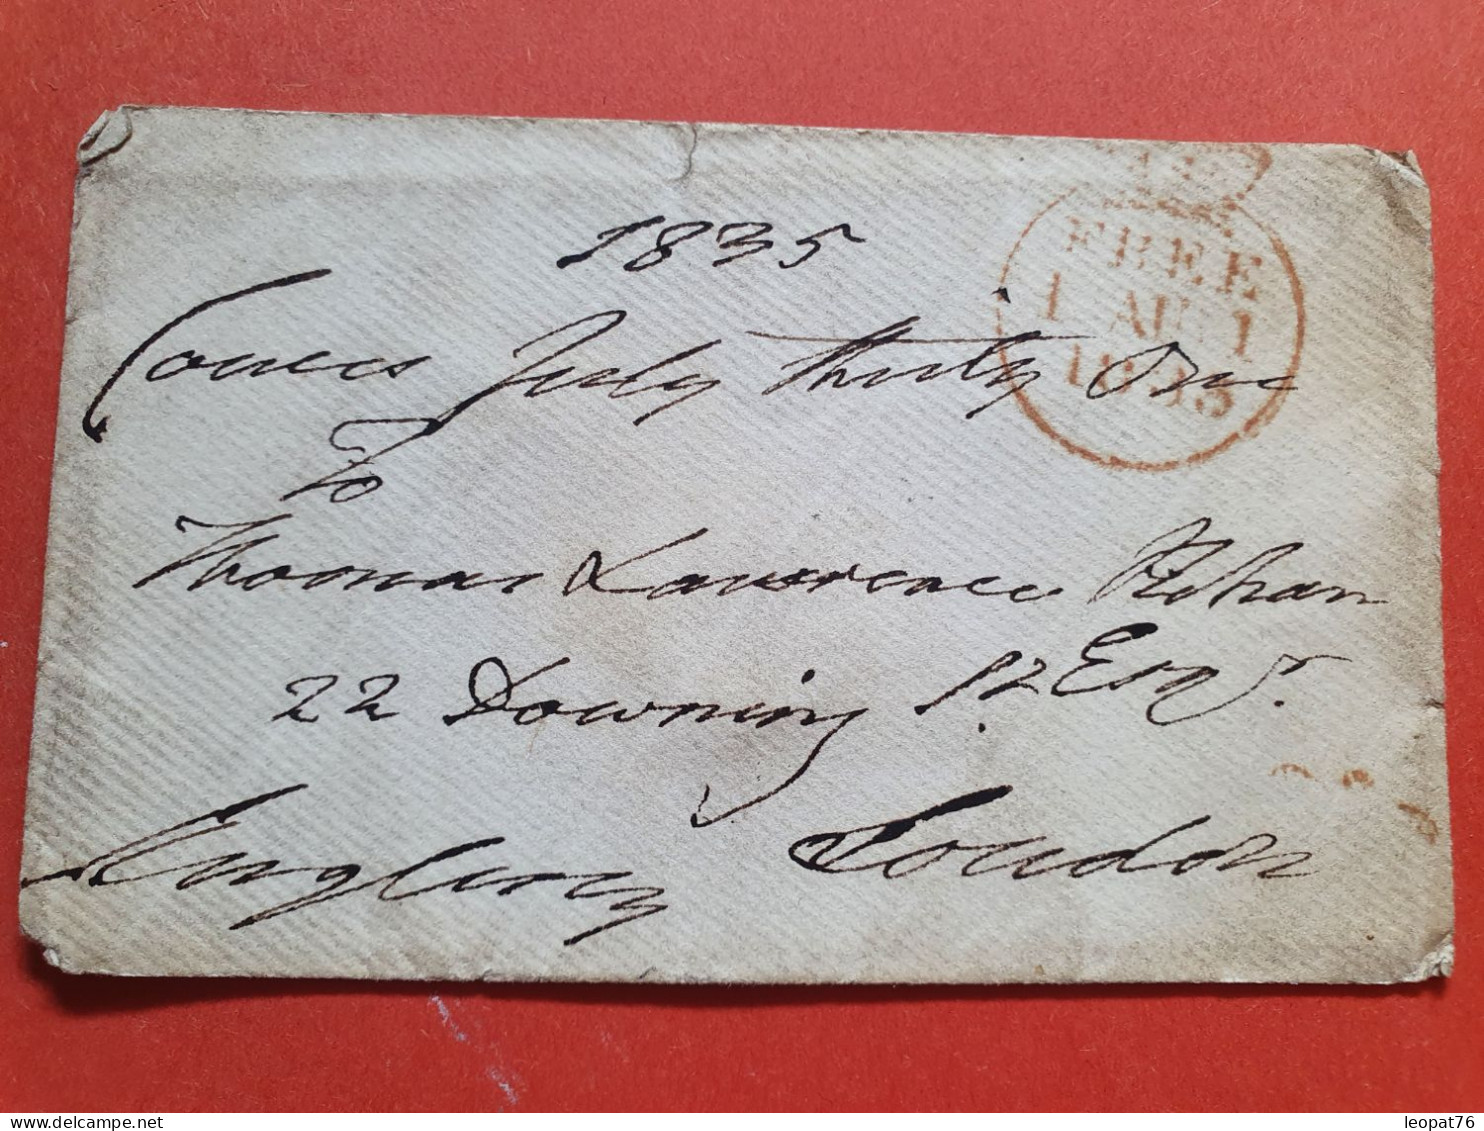 GB - Enveloppe En Franchise Postale Pour Londres En 1835 - Réf J 217 - ...-1840 Vorläufer